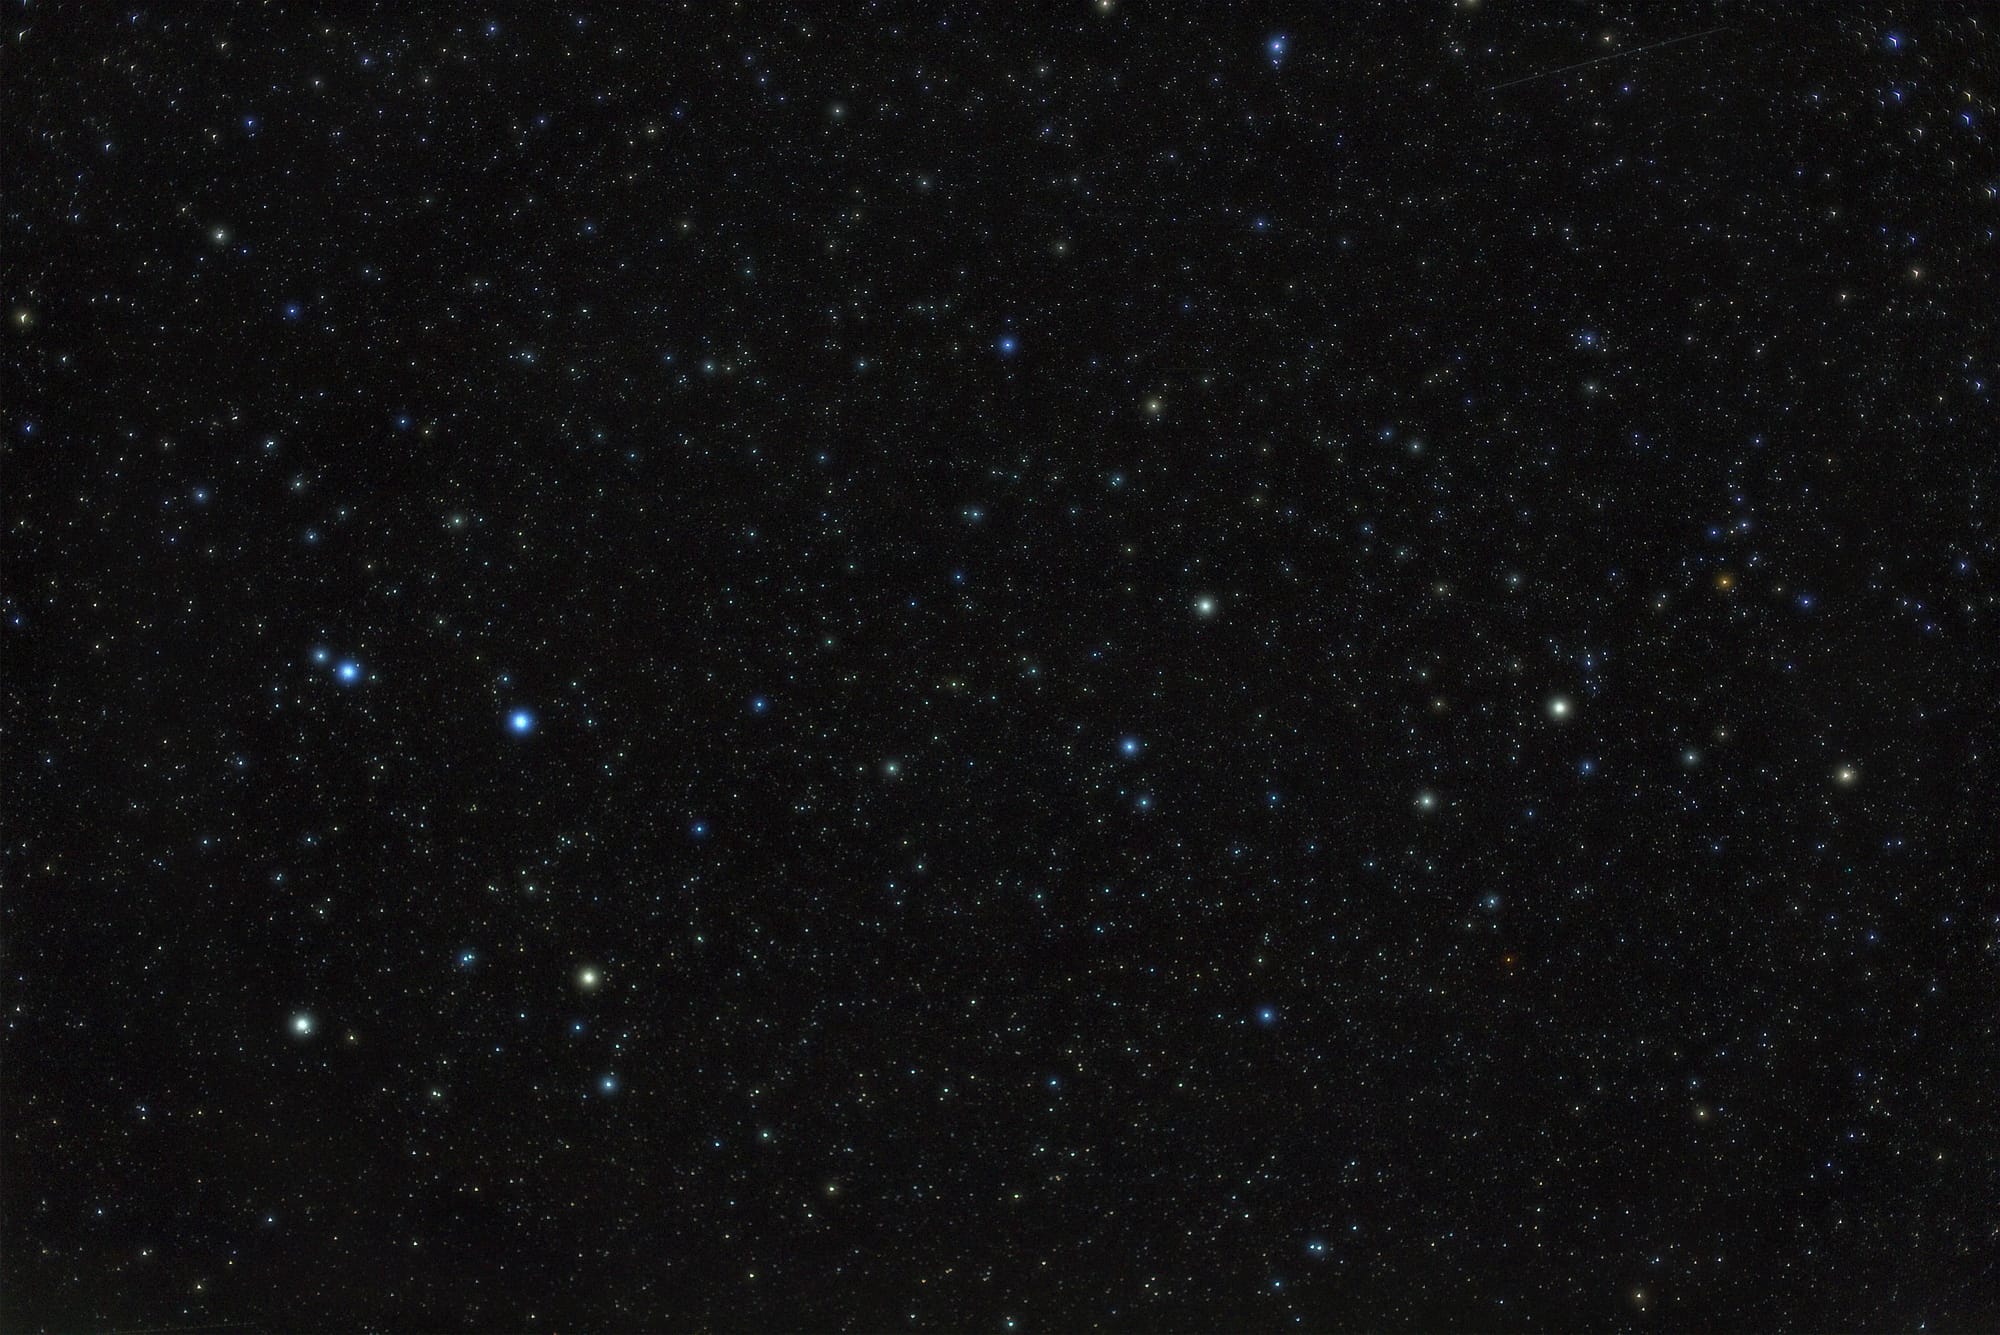 Der Rabe (lateinisch Corvus) ist ein Sternbild des Südhimmels. Die vier hellsten Sterne bilden ein auffälliges konvexes Viereck.